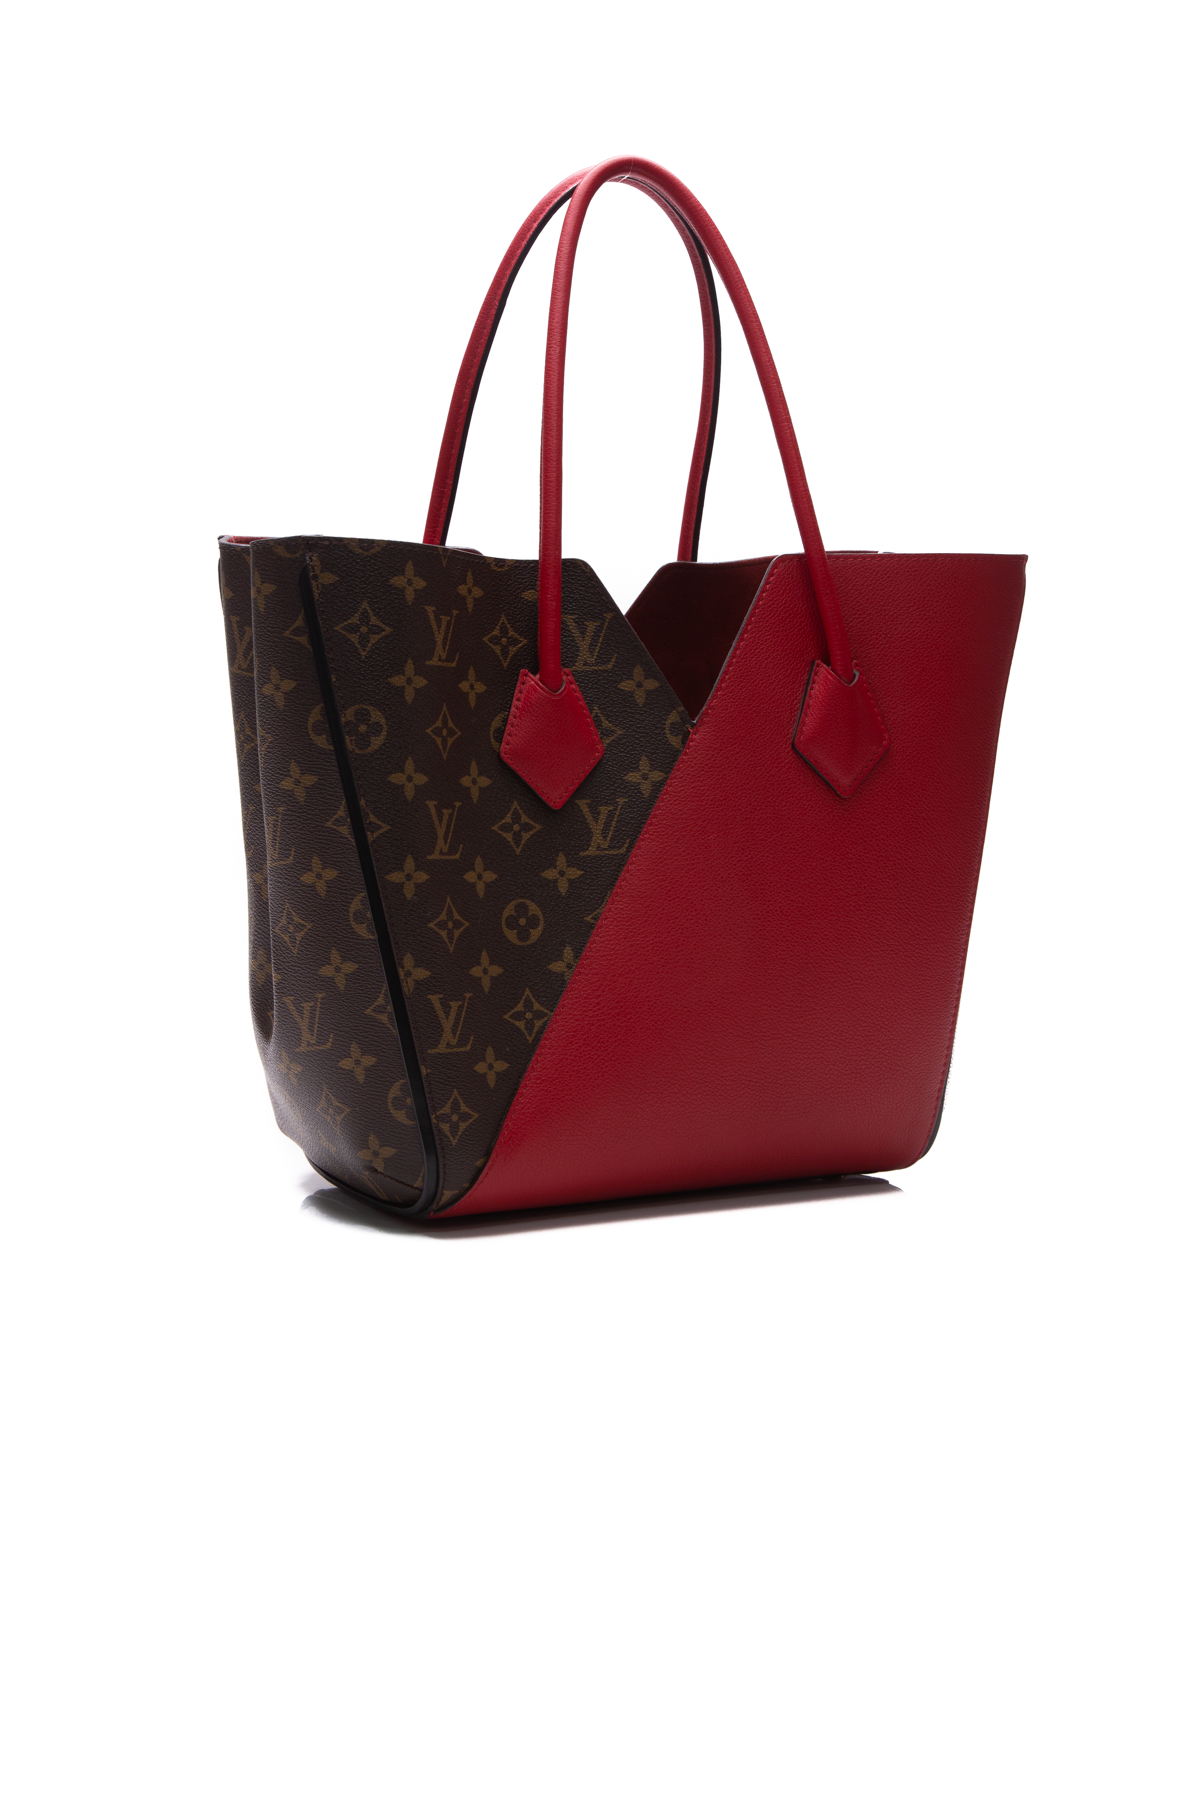 Louis Vuitton Lockme Hobo Bag - Couture USA